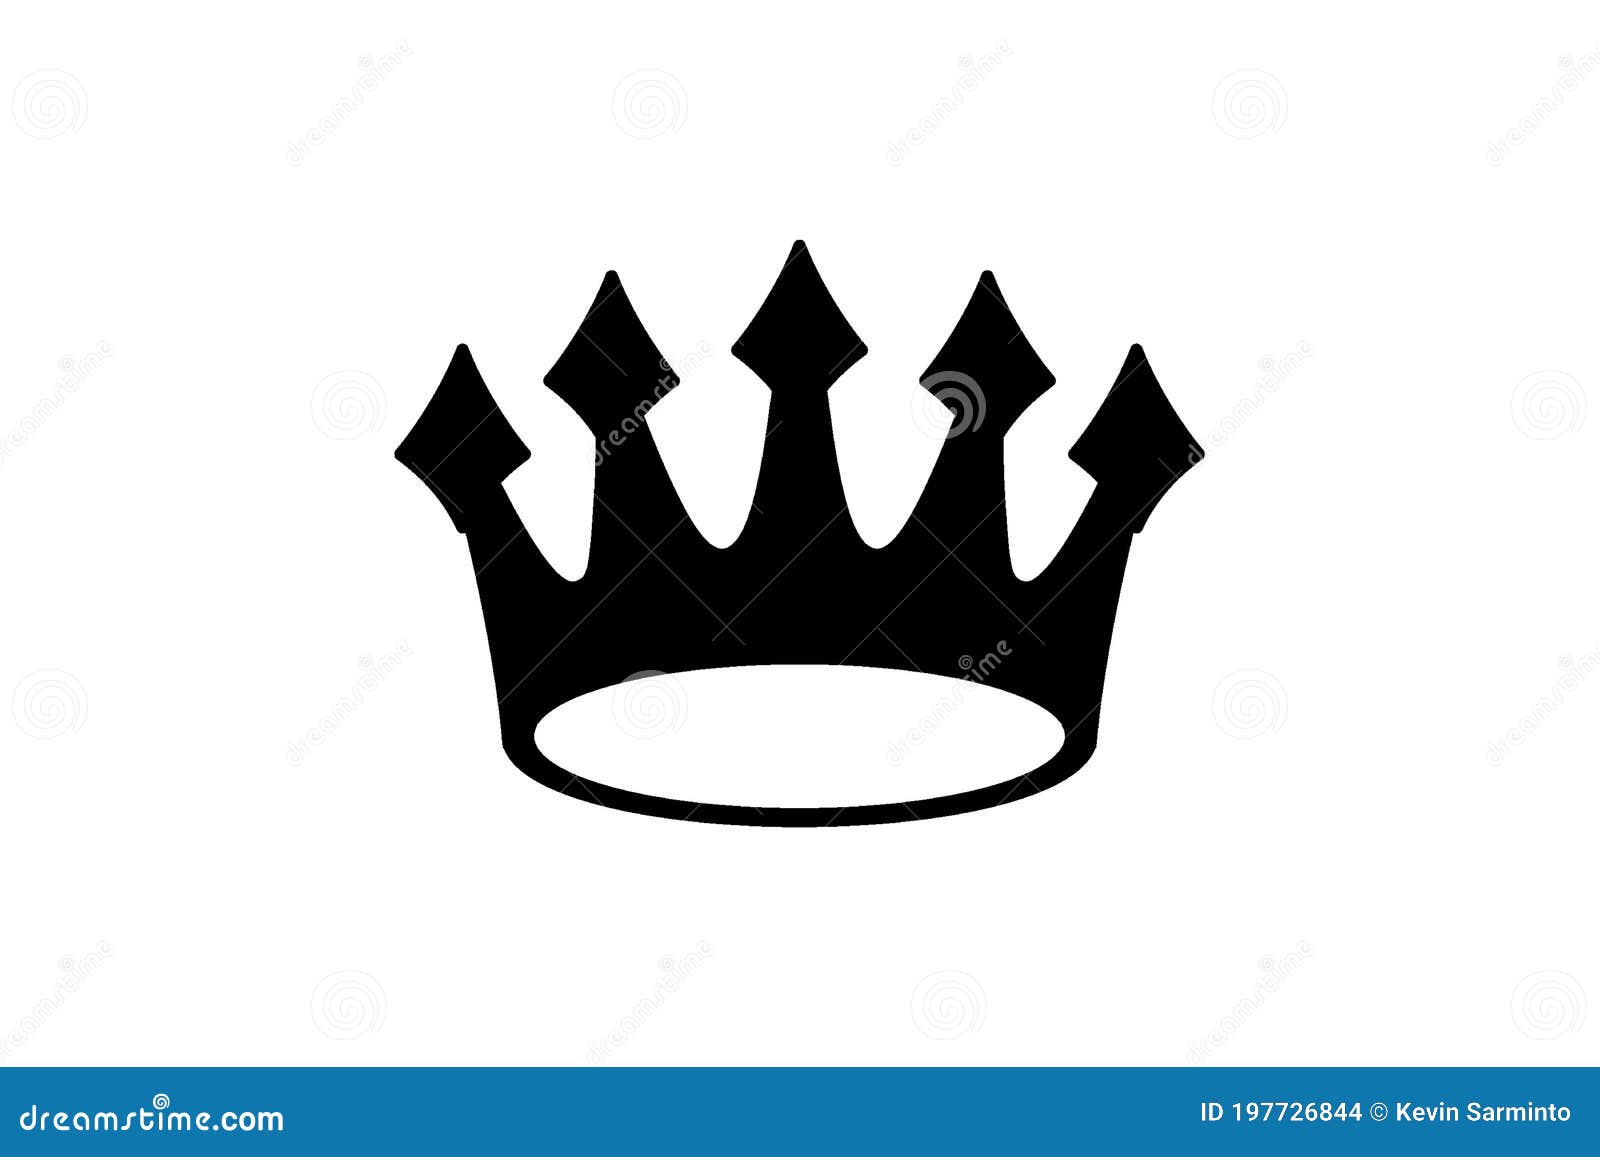 Logo de la corona de rey ilustración del vector. Ilustración de